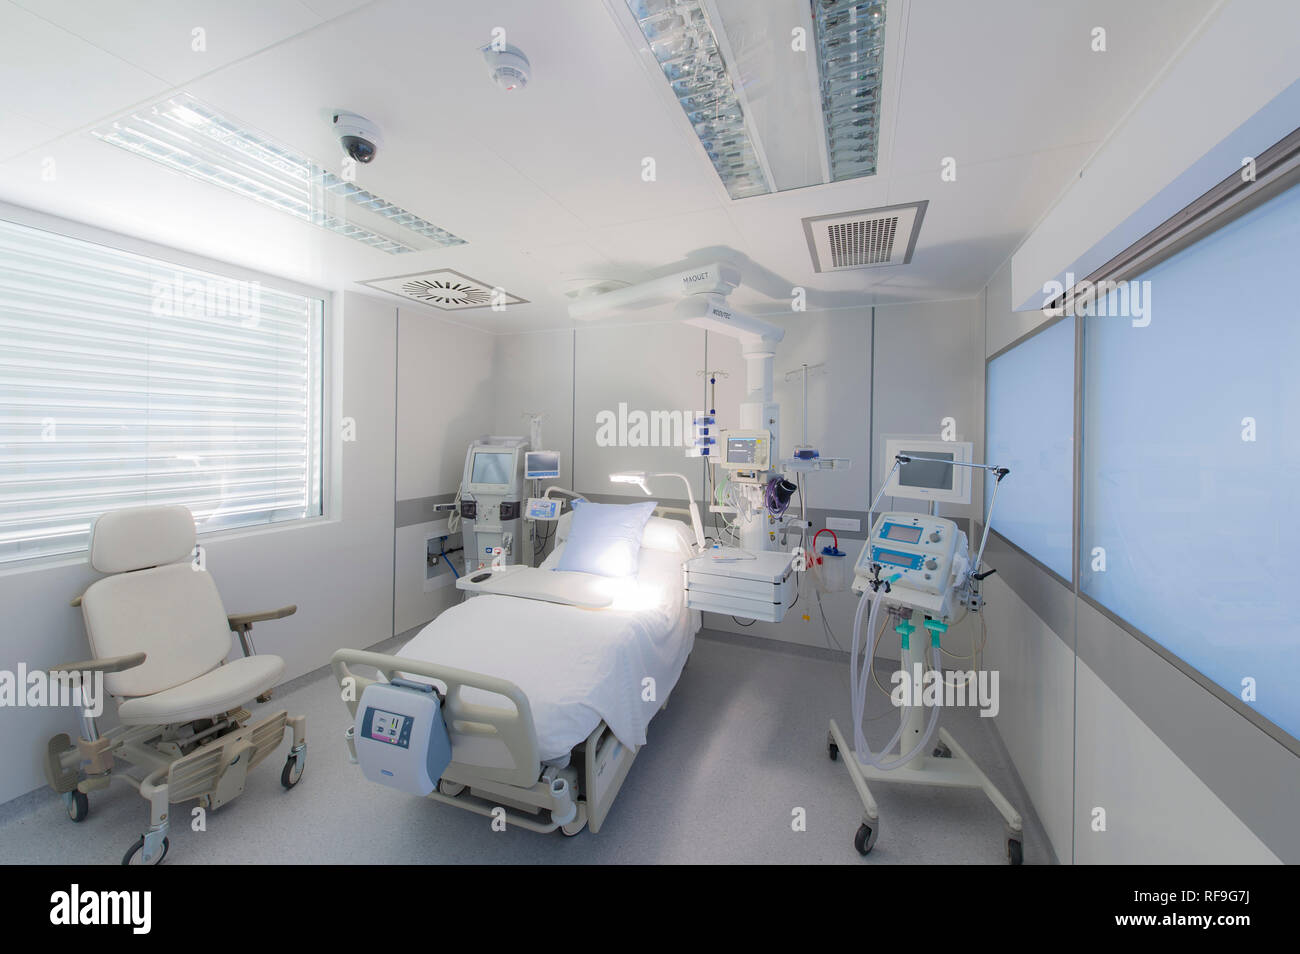 Hôpital privé "Clinique Saint Exupery de Toulouse", clinique spécialisée dans le traitement des maladies du rein, la maladie rénale. Équipé médicalement vide Banque D'Images